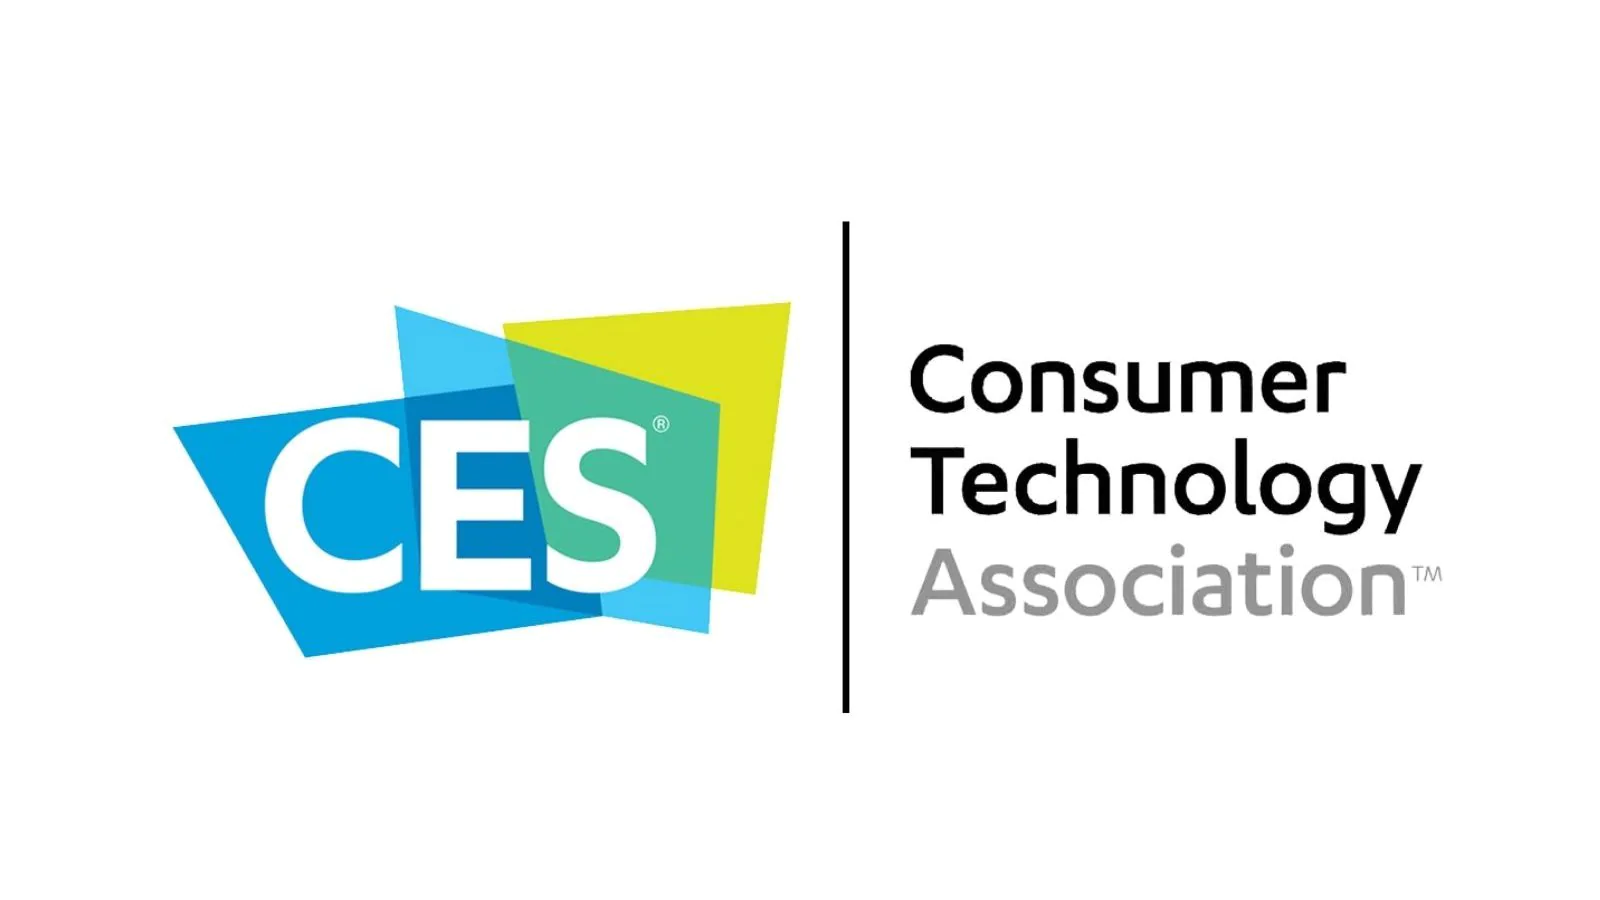 Consumer Technology Association visuel